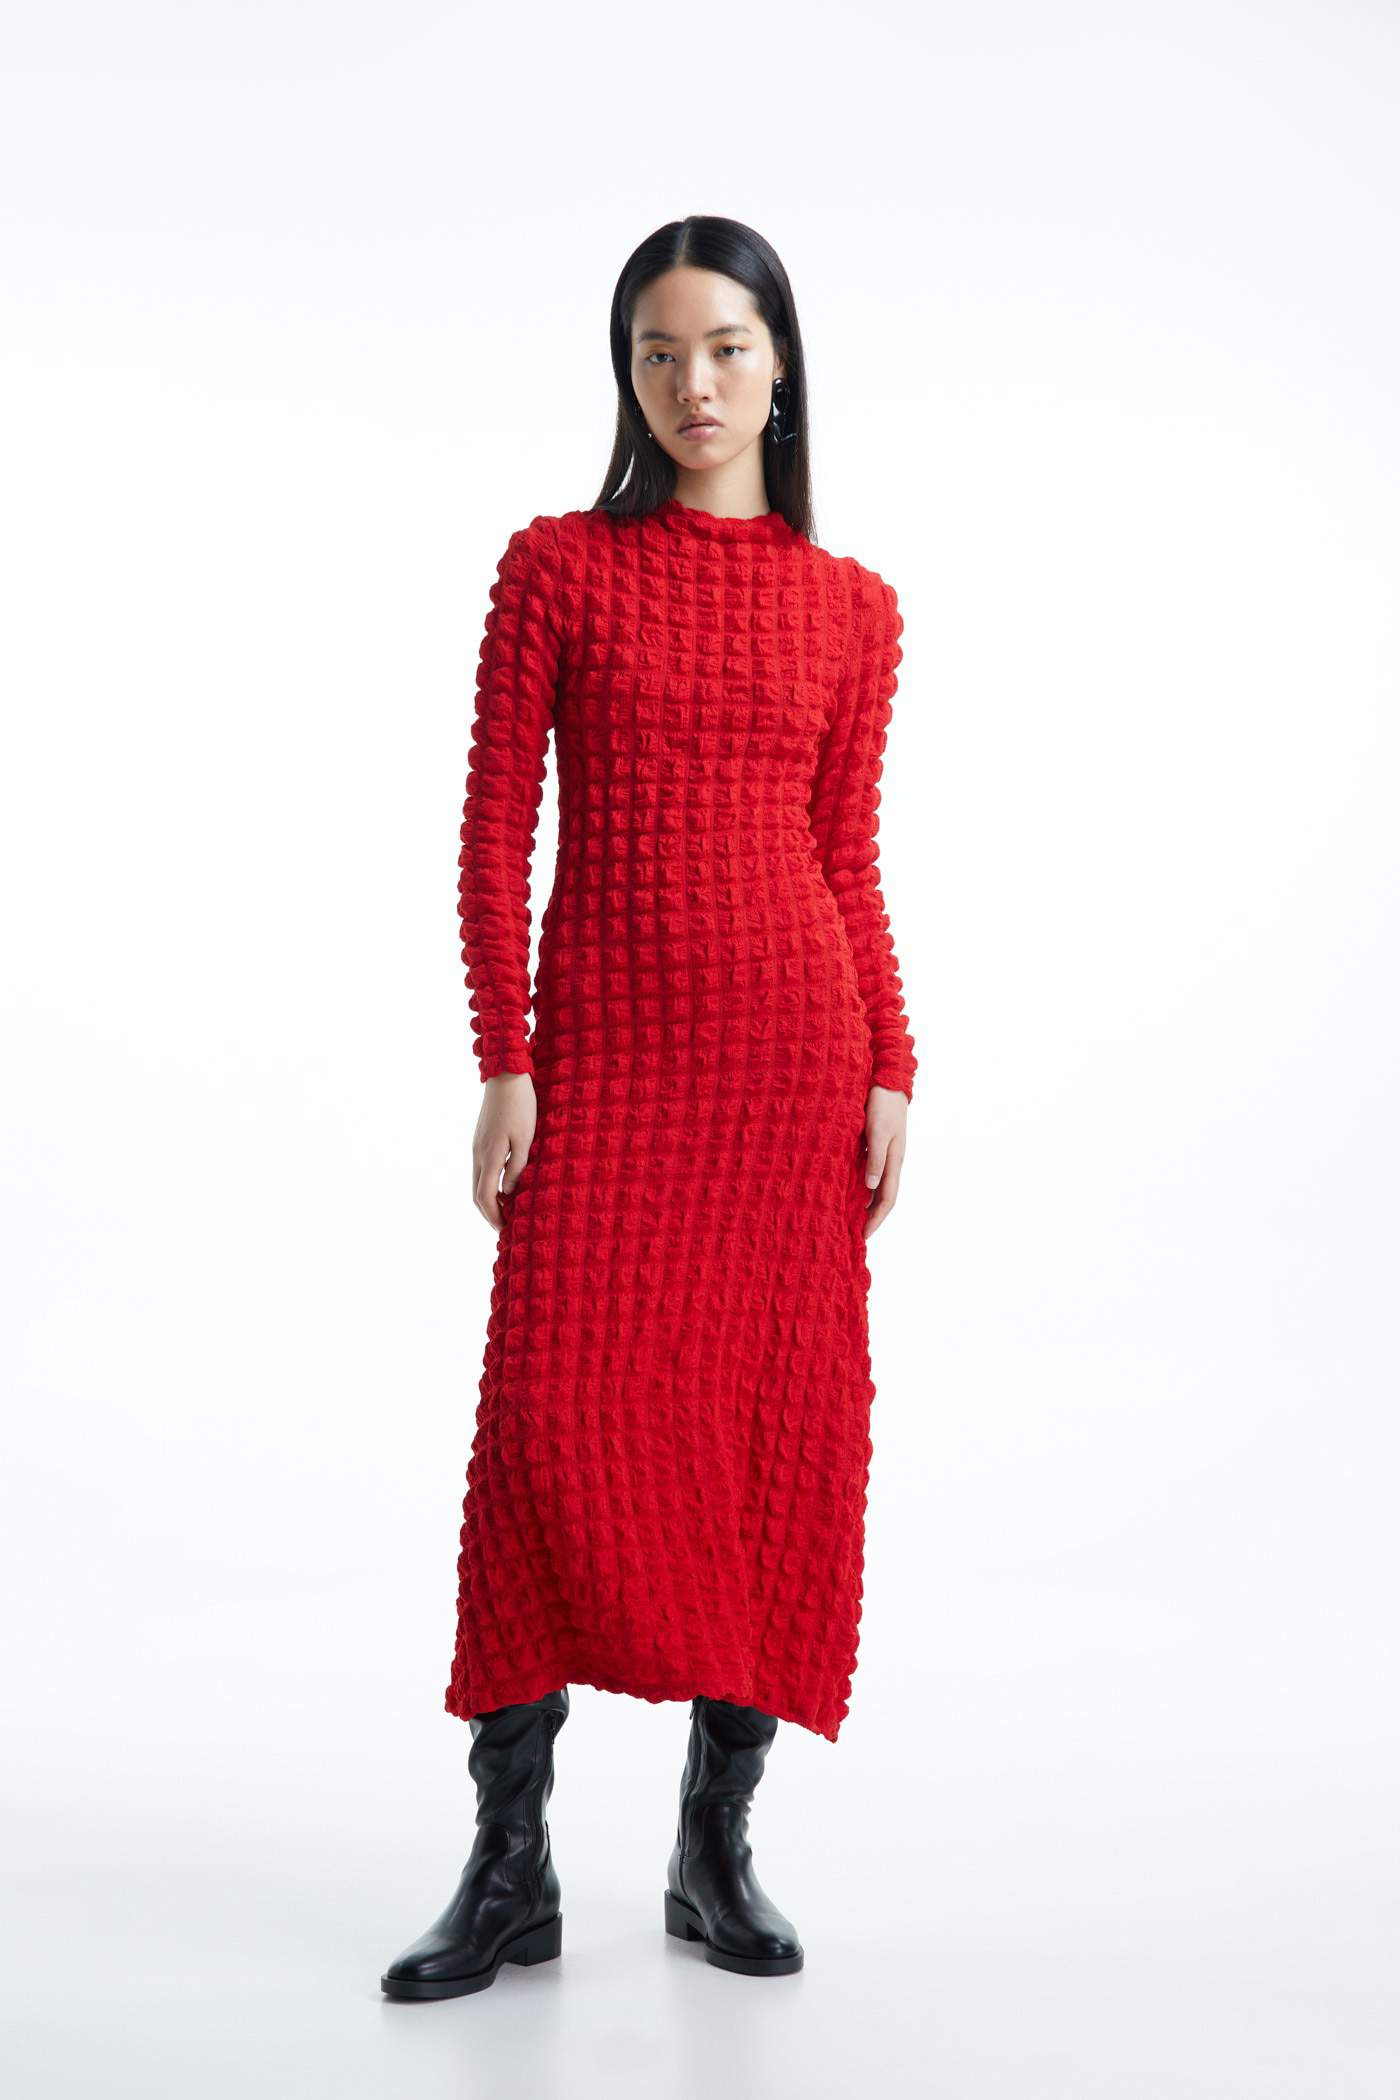 Vestido rojo con textura